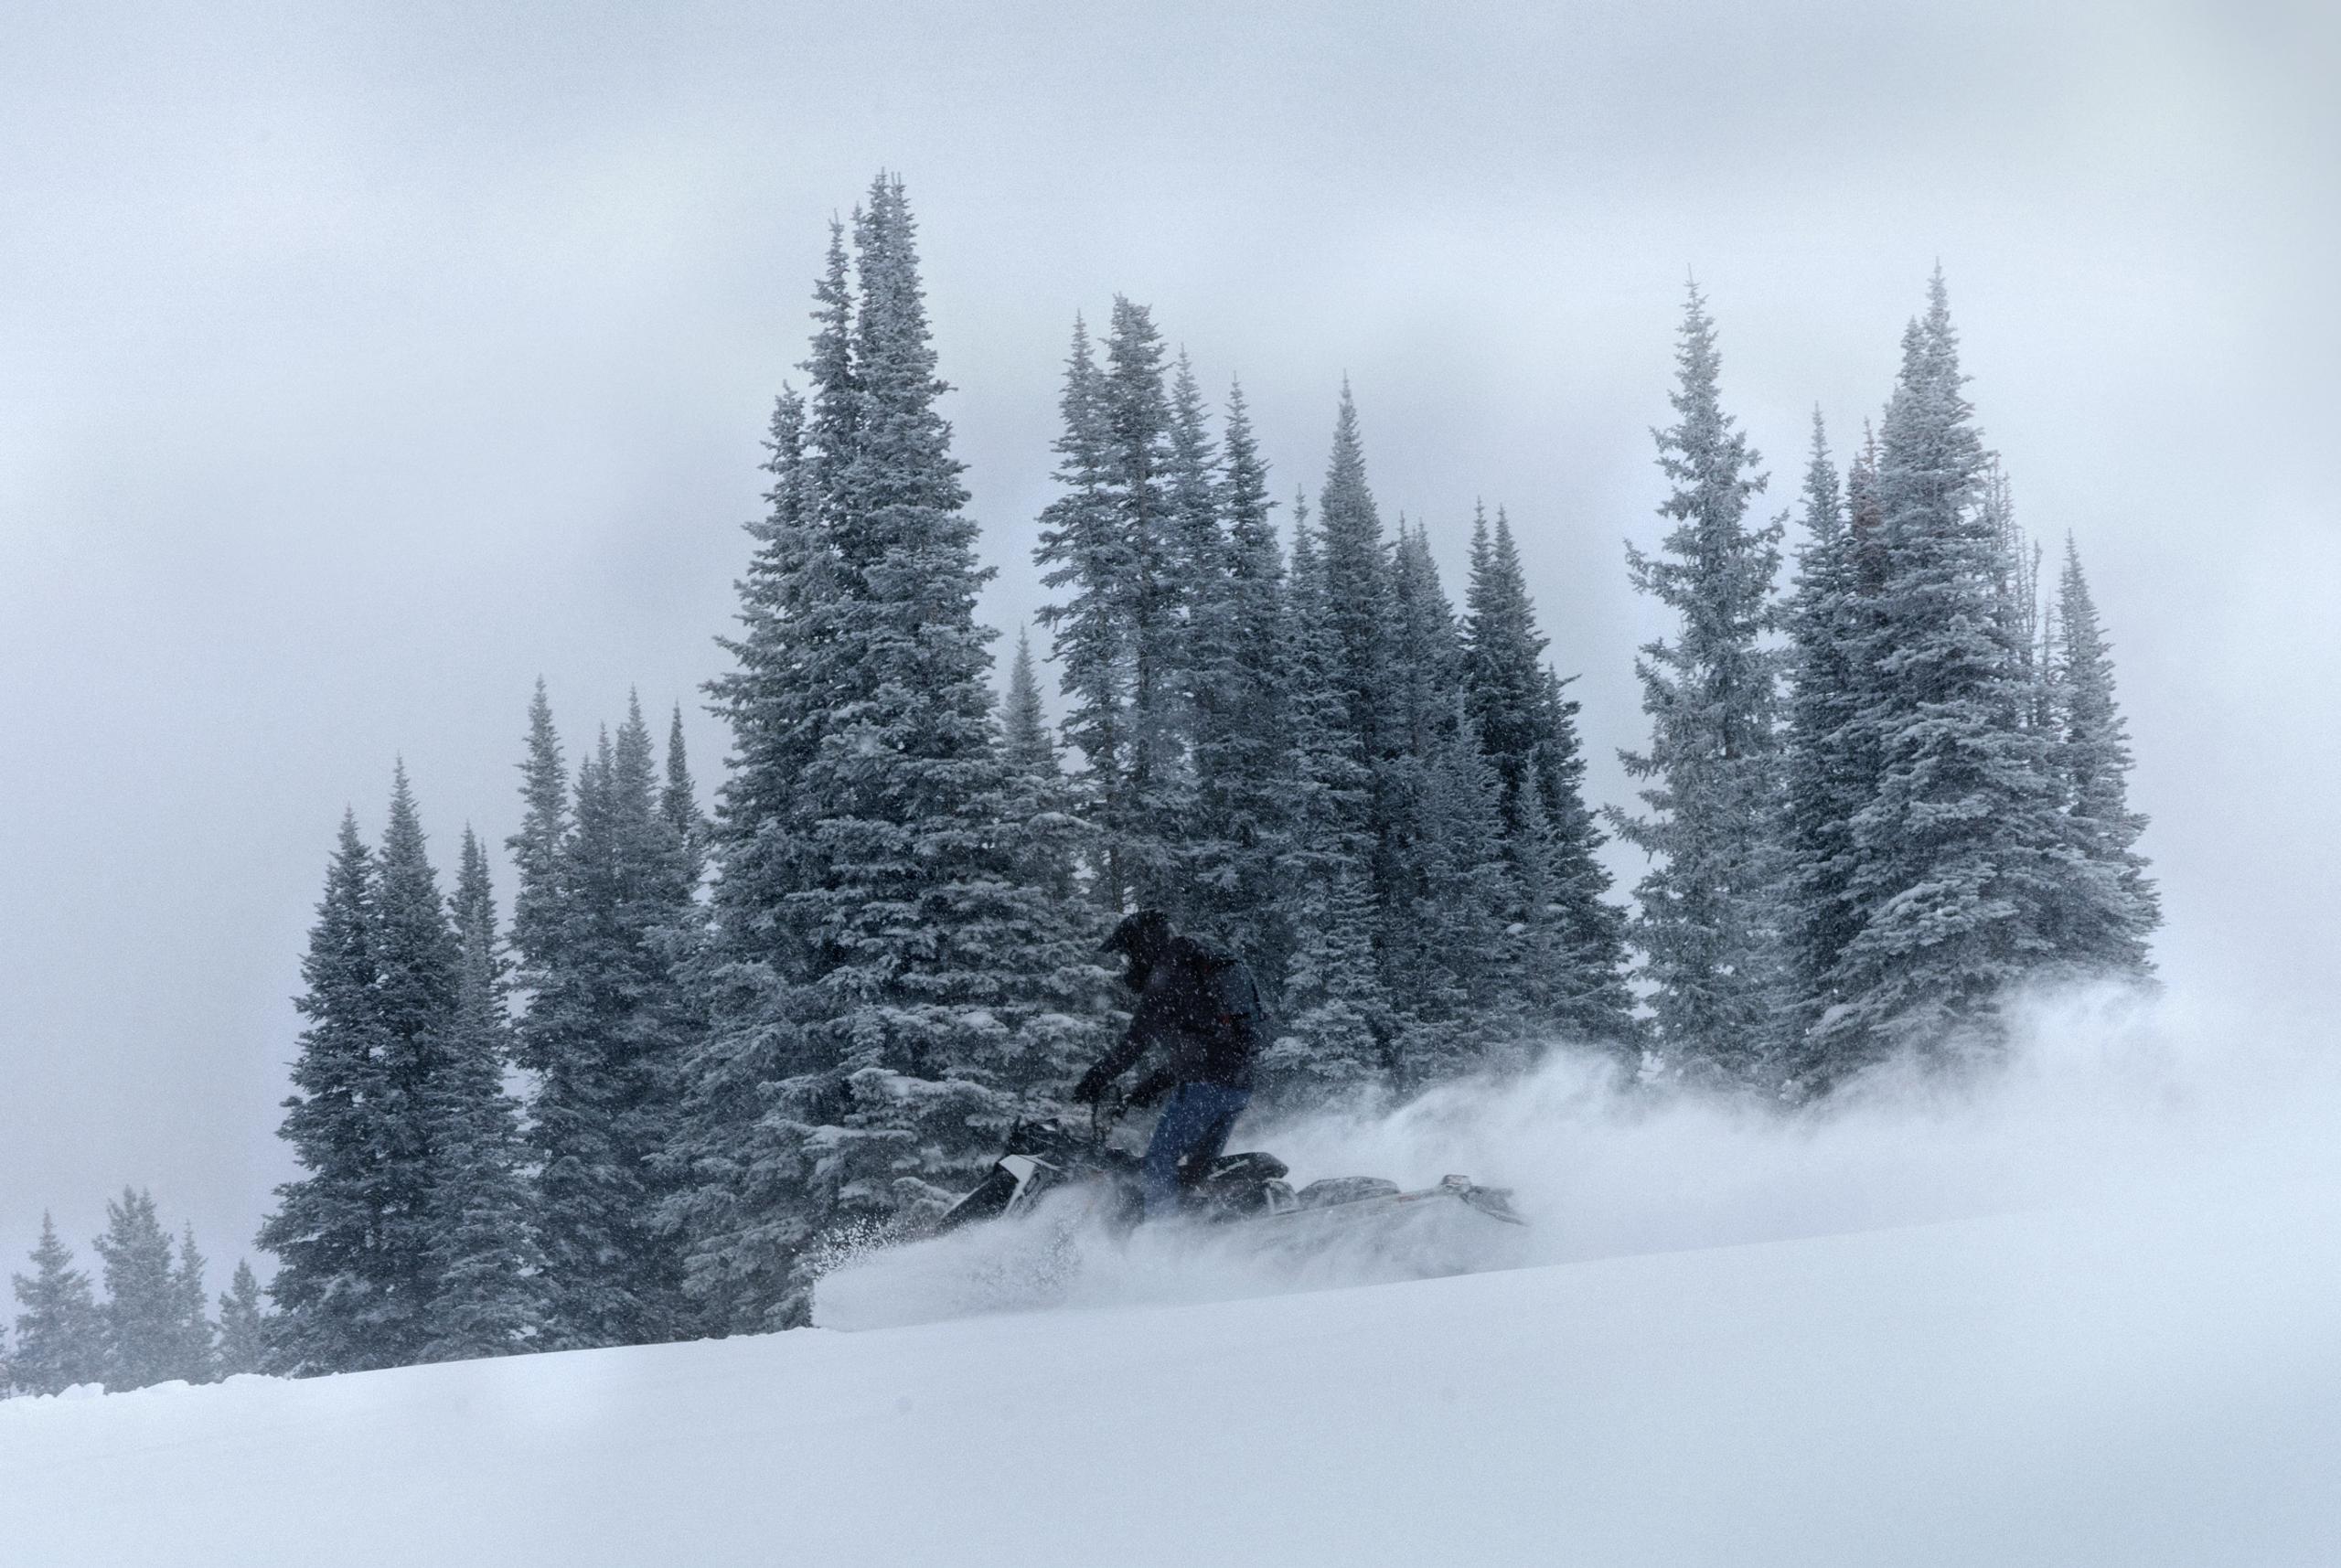 man riding snowmobile